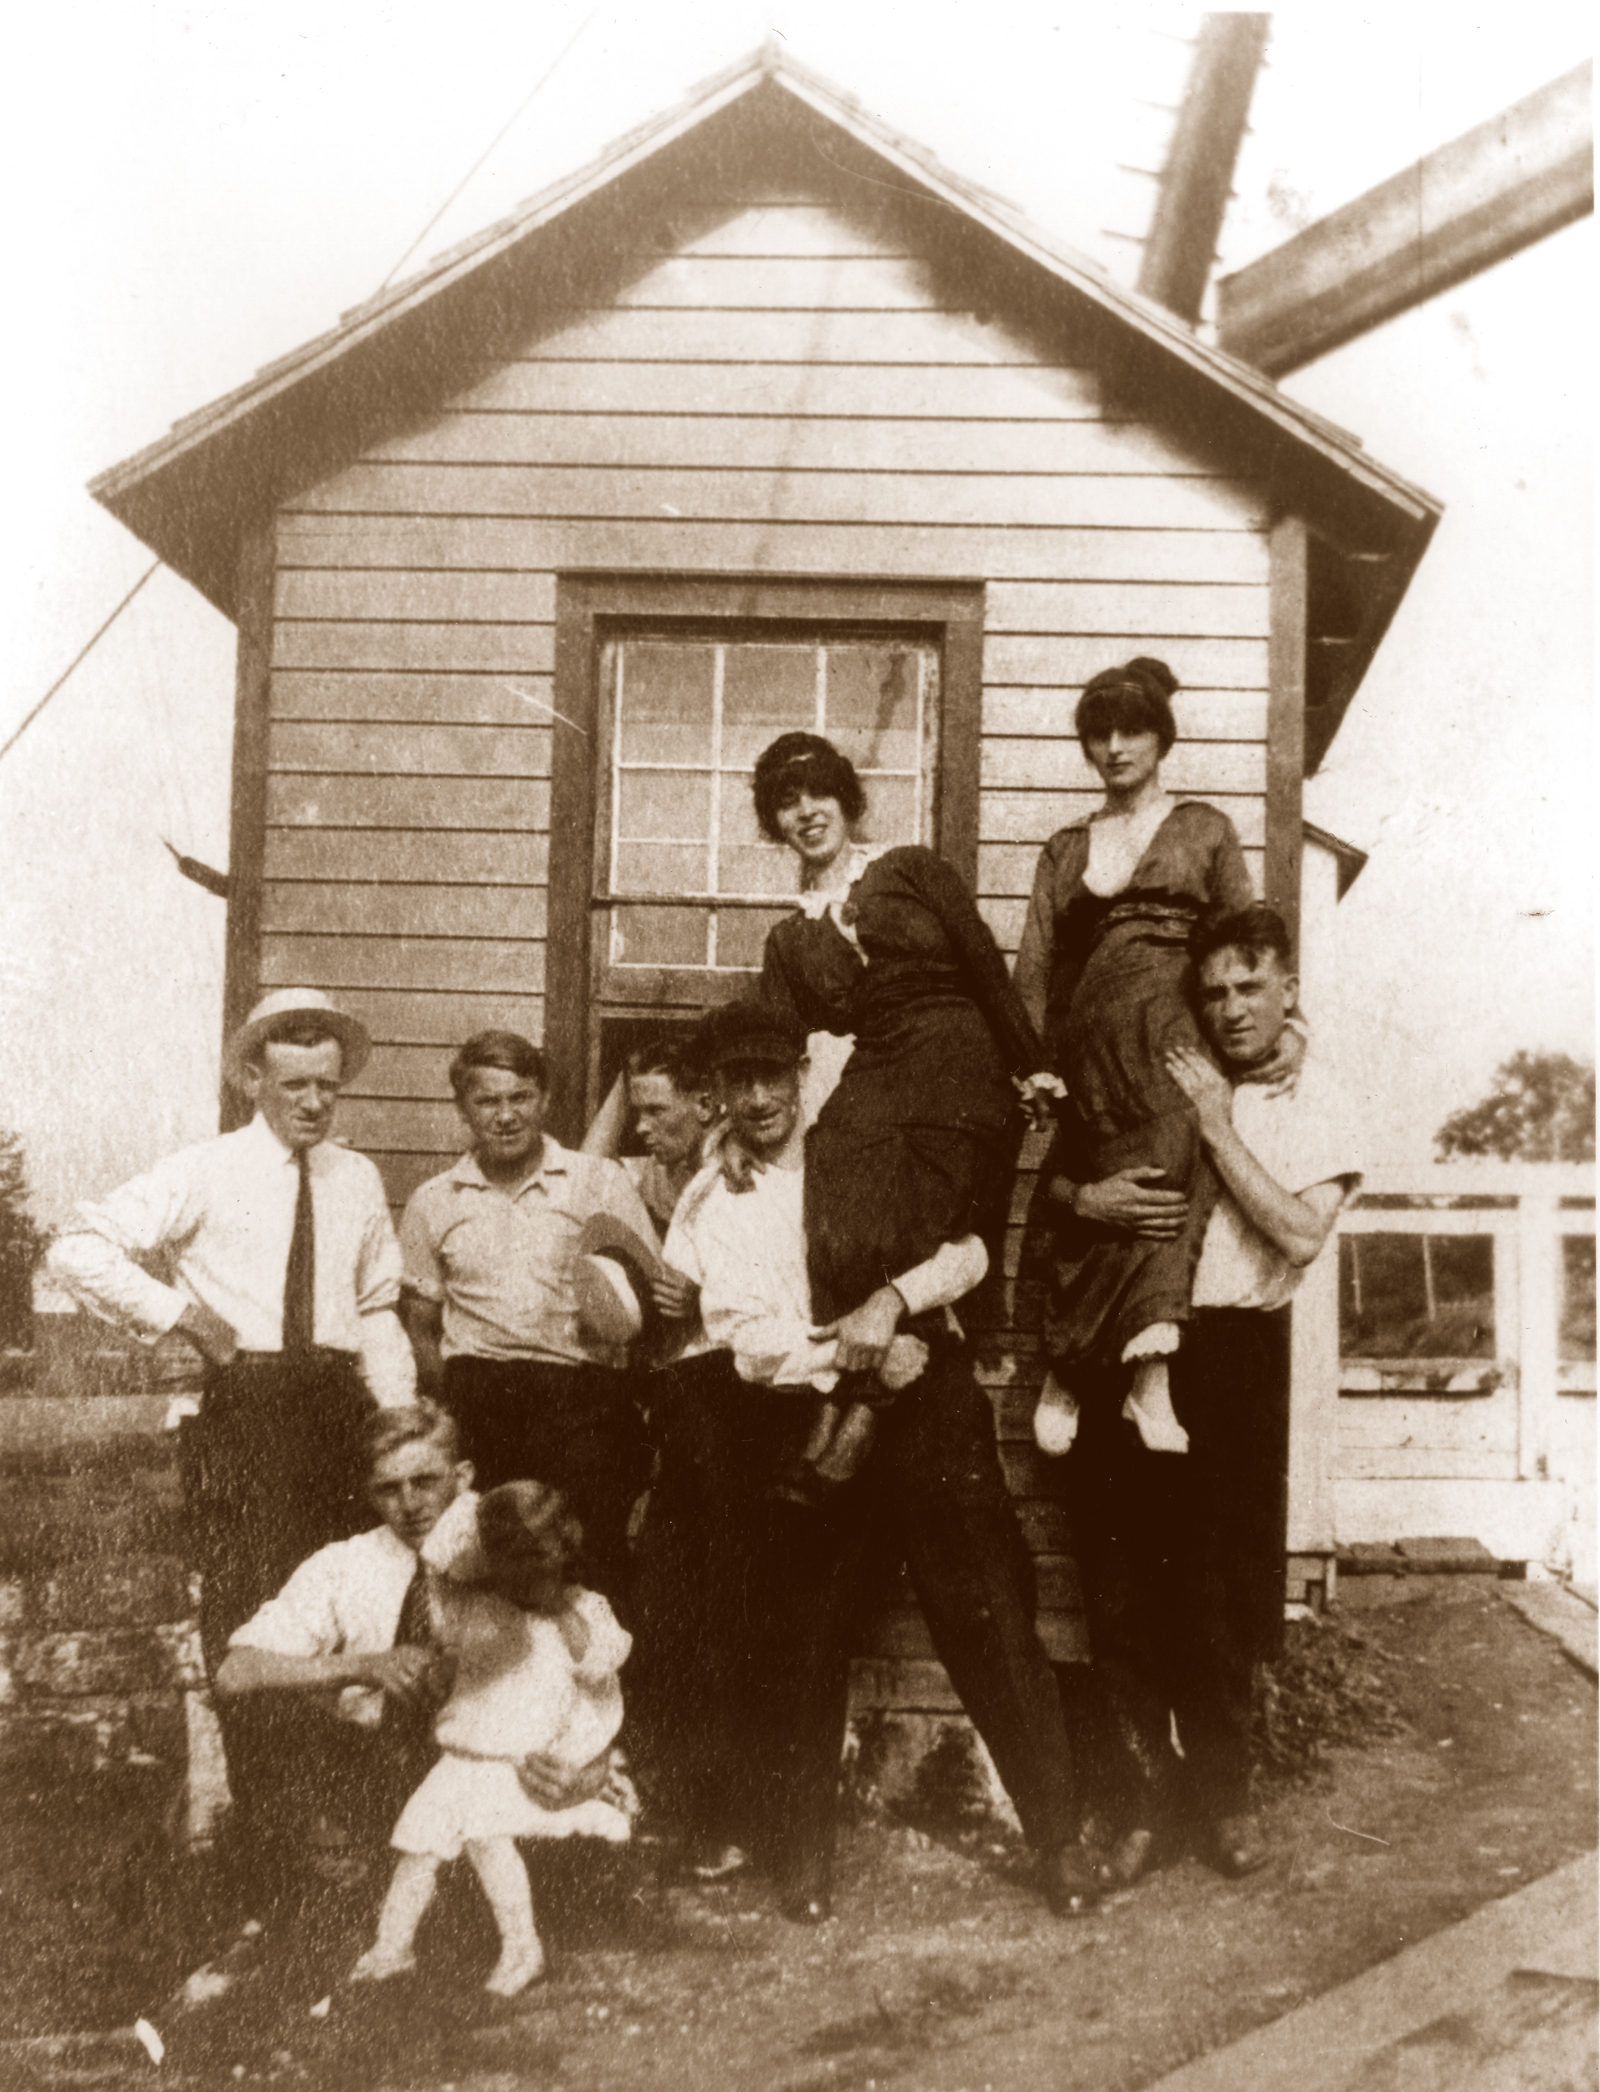 The McCabes at the Landing Lane Bridge Tender's Station; c. 1910